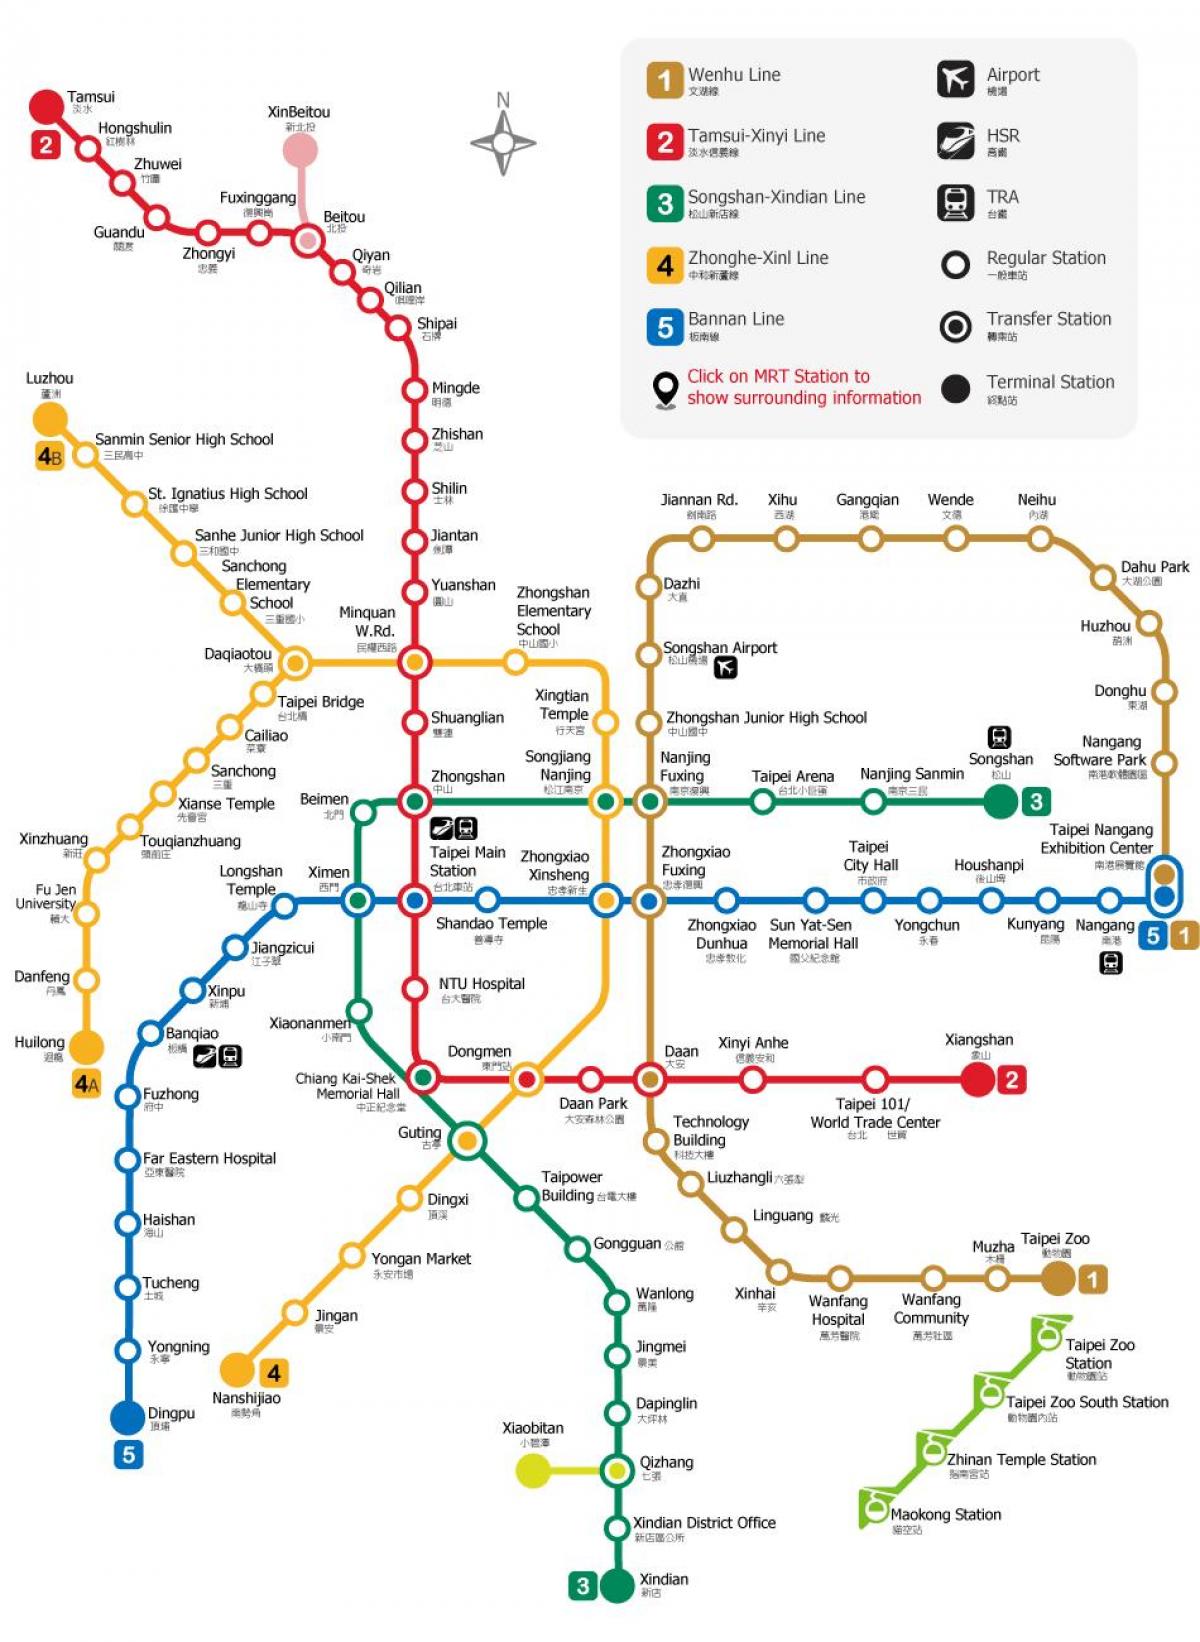 ТПЭ MRT карту